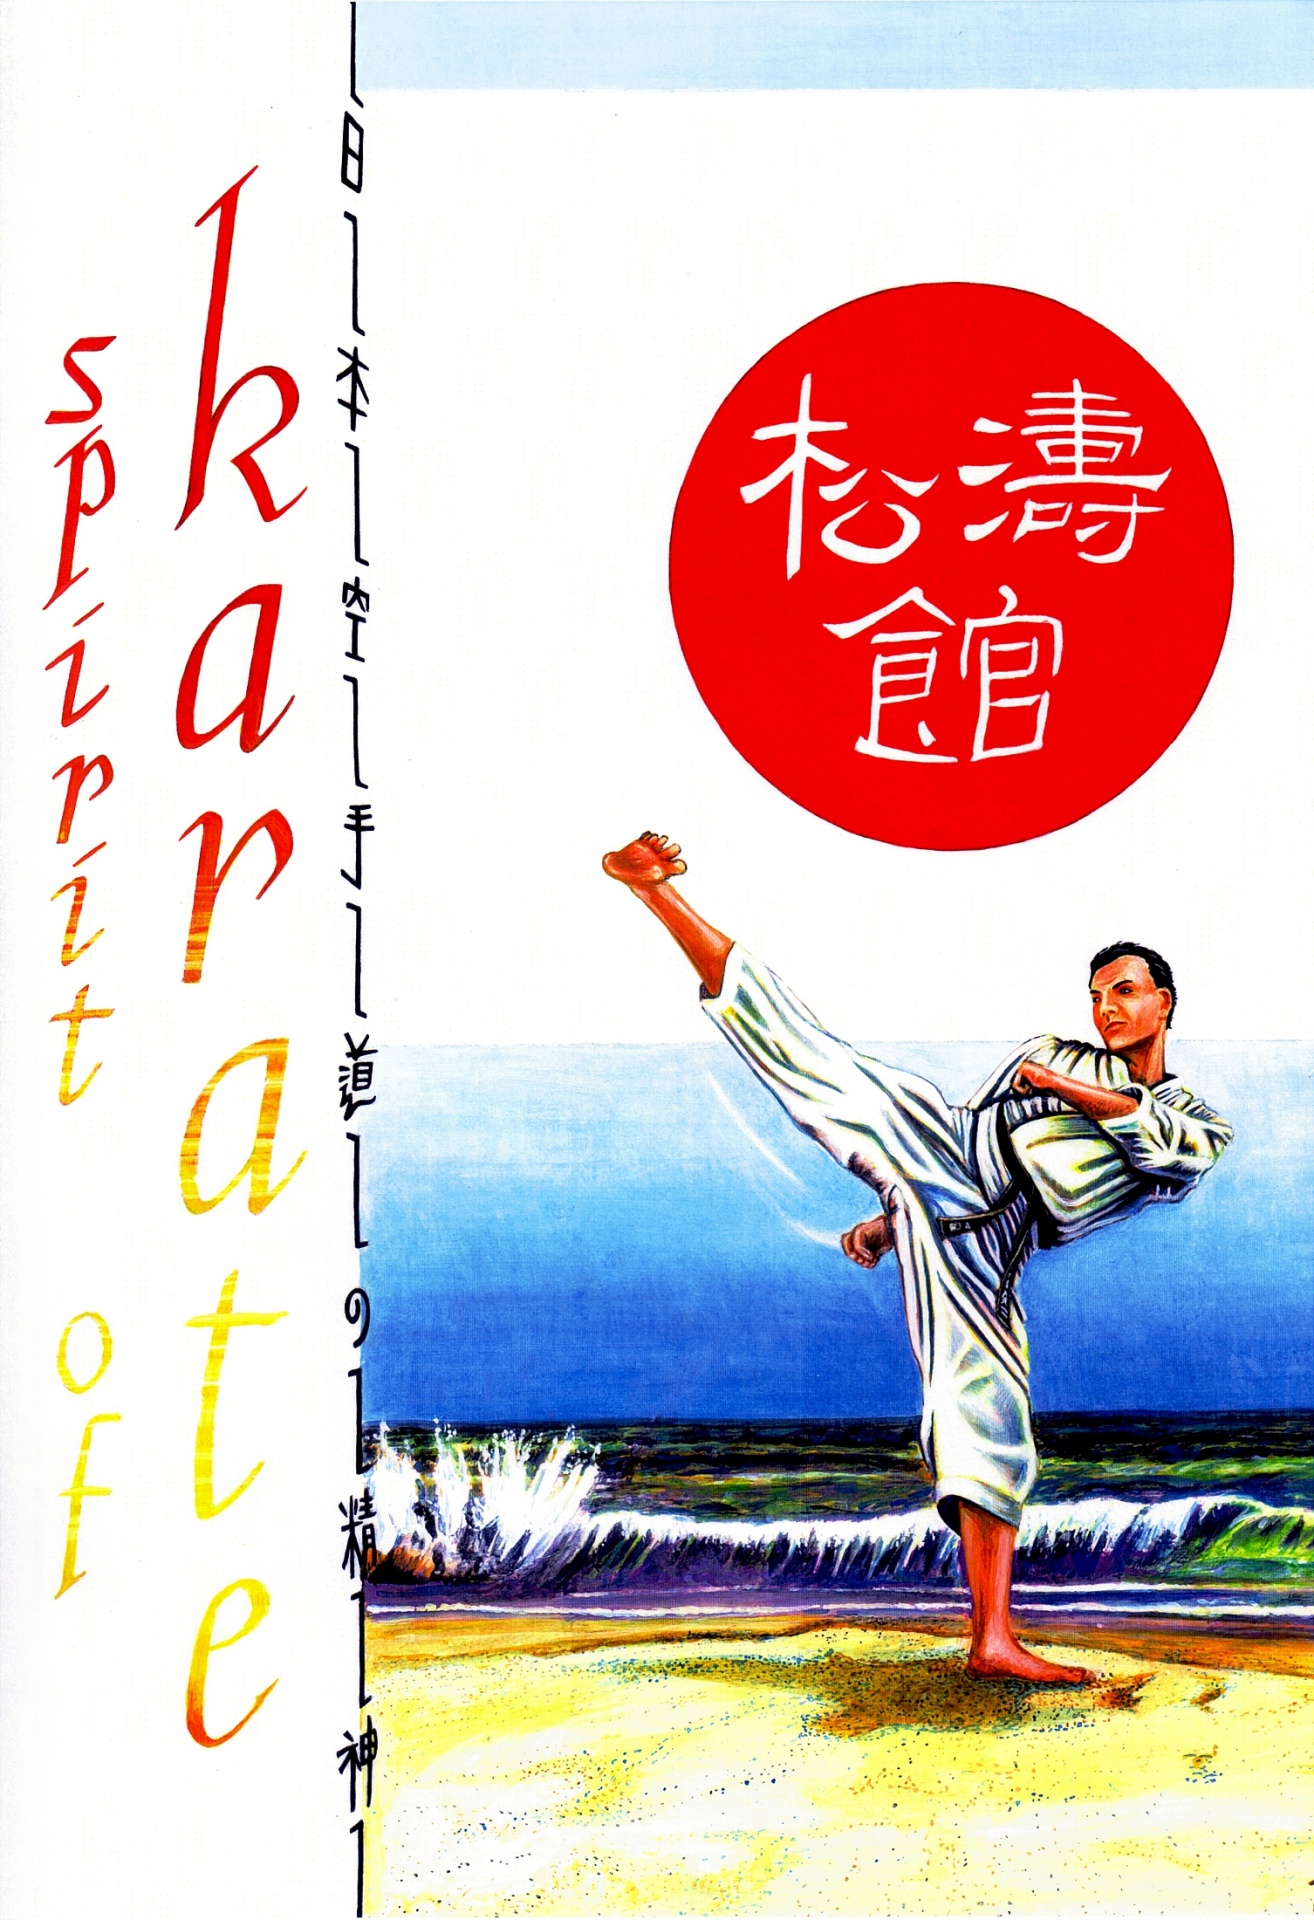 Spirit Of Karate